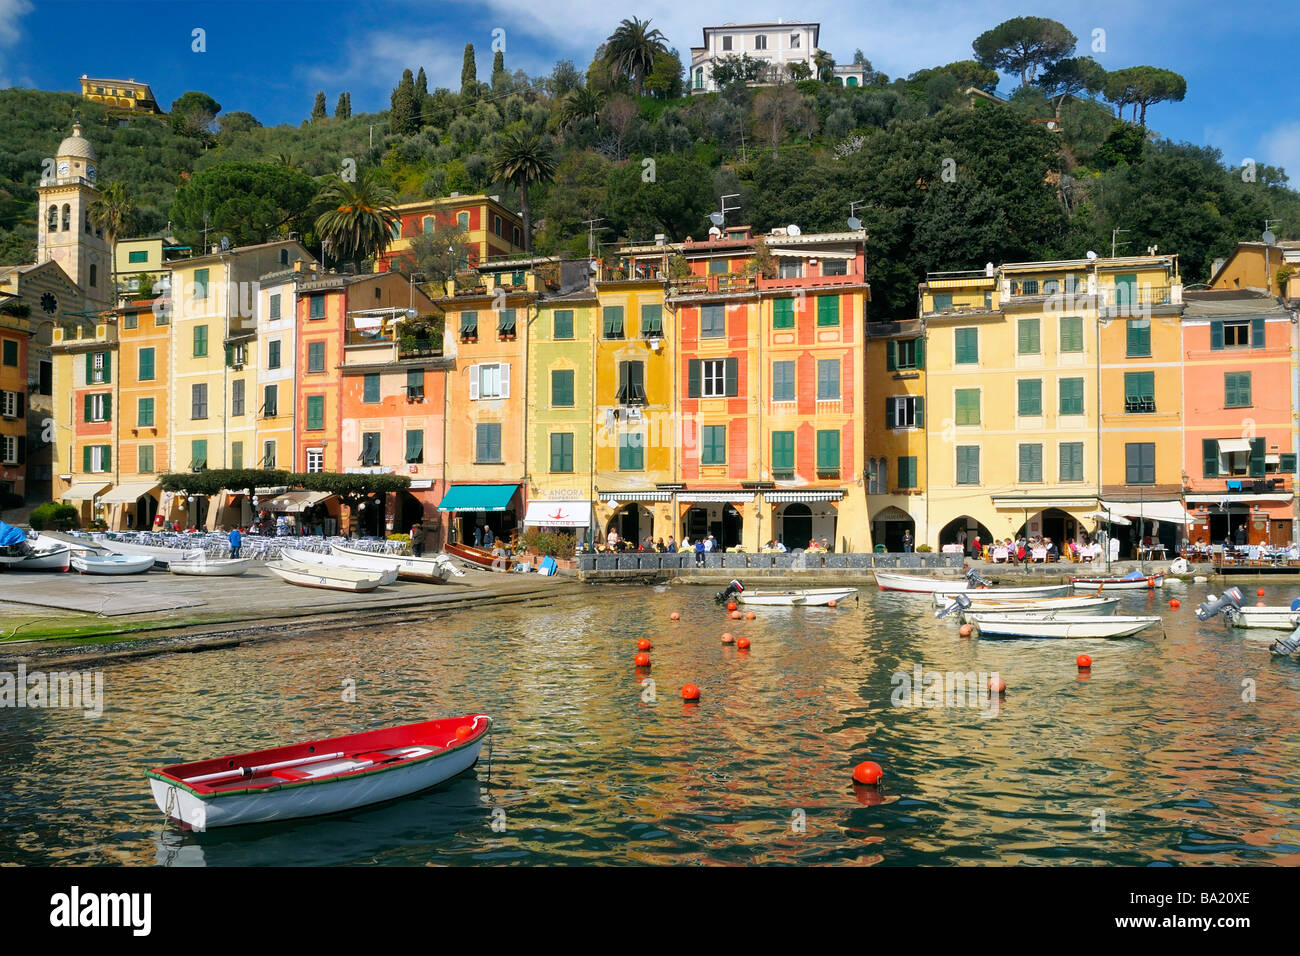 Der Hafen und die Stadt Plaza in der mediterranen Stadt Portofino, Ligurien, Italien Stockfoto